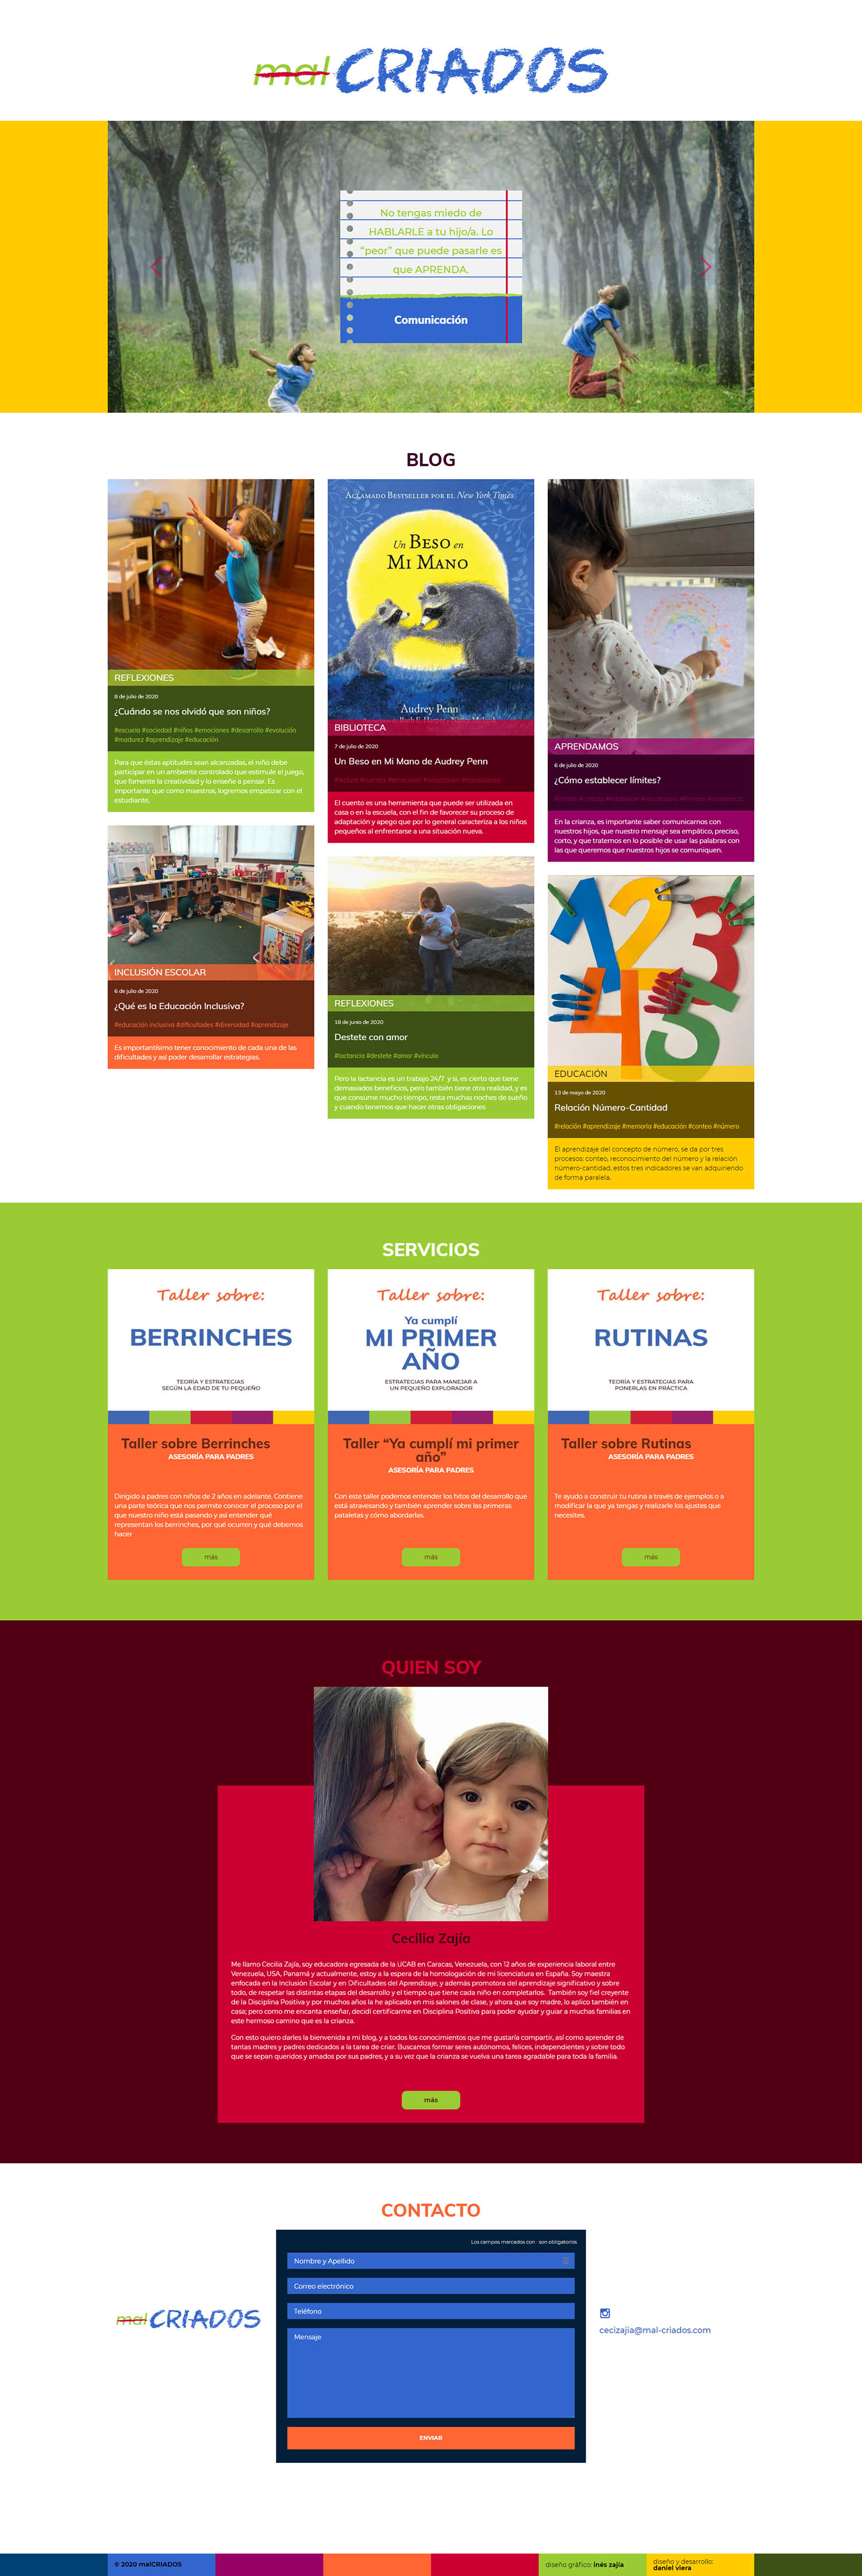 malCRIADOS | Nuevo sitio web para una maestra especialista en disciplina positiva y educación inclusiva. Realizado en WordPress con bootstrap 4 y sass. Responsive, con scroll infinito y mansory.